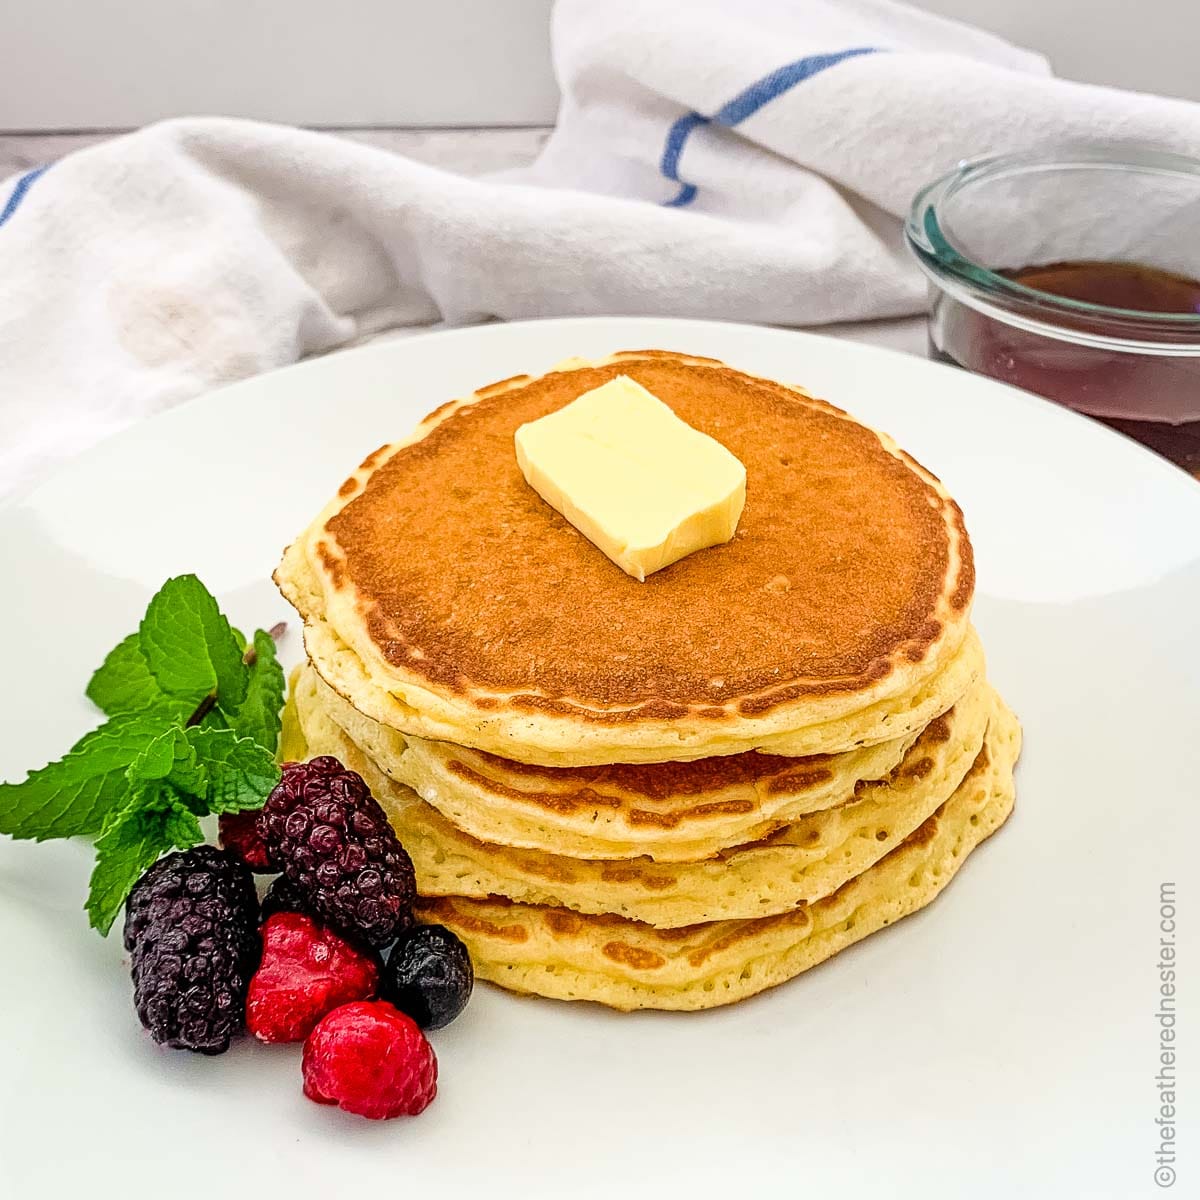 Buttermilk Blackstone Pancakes (The Best Griddle Pancakes)